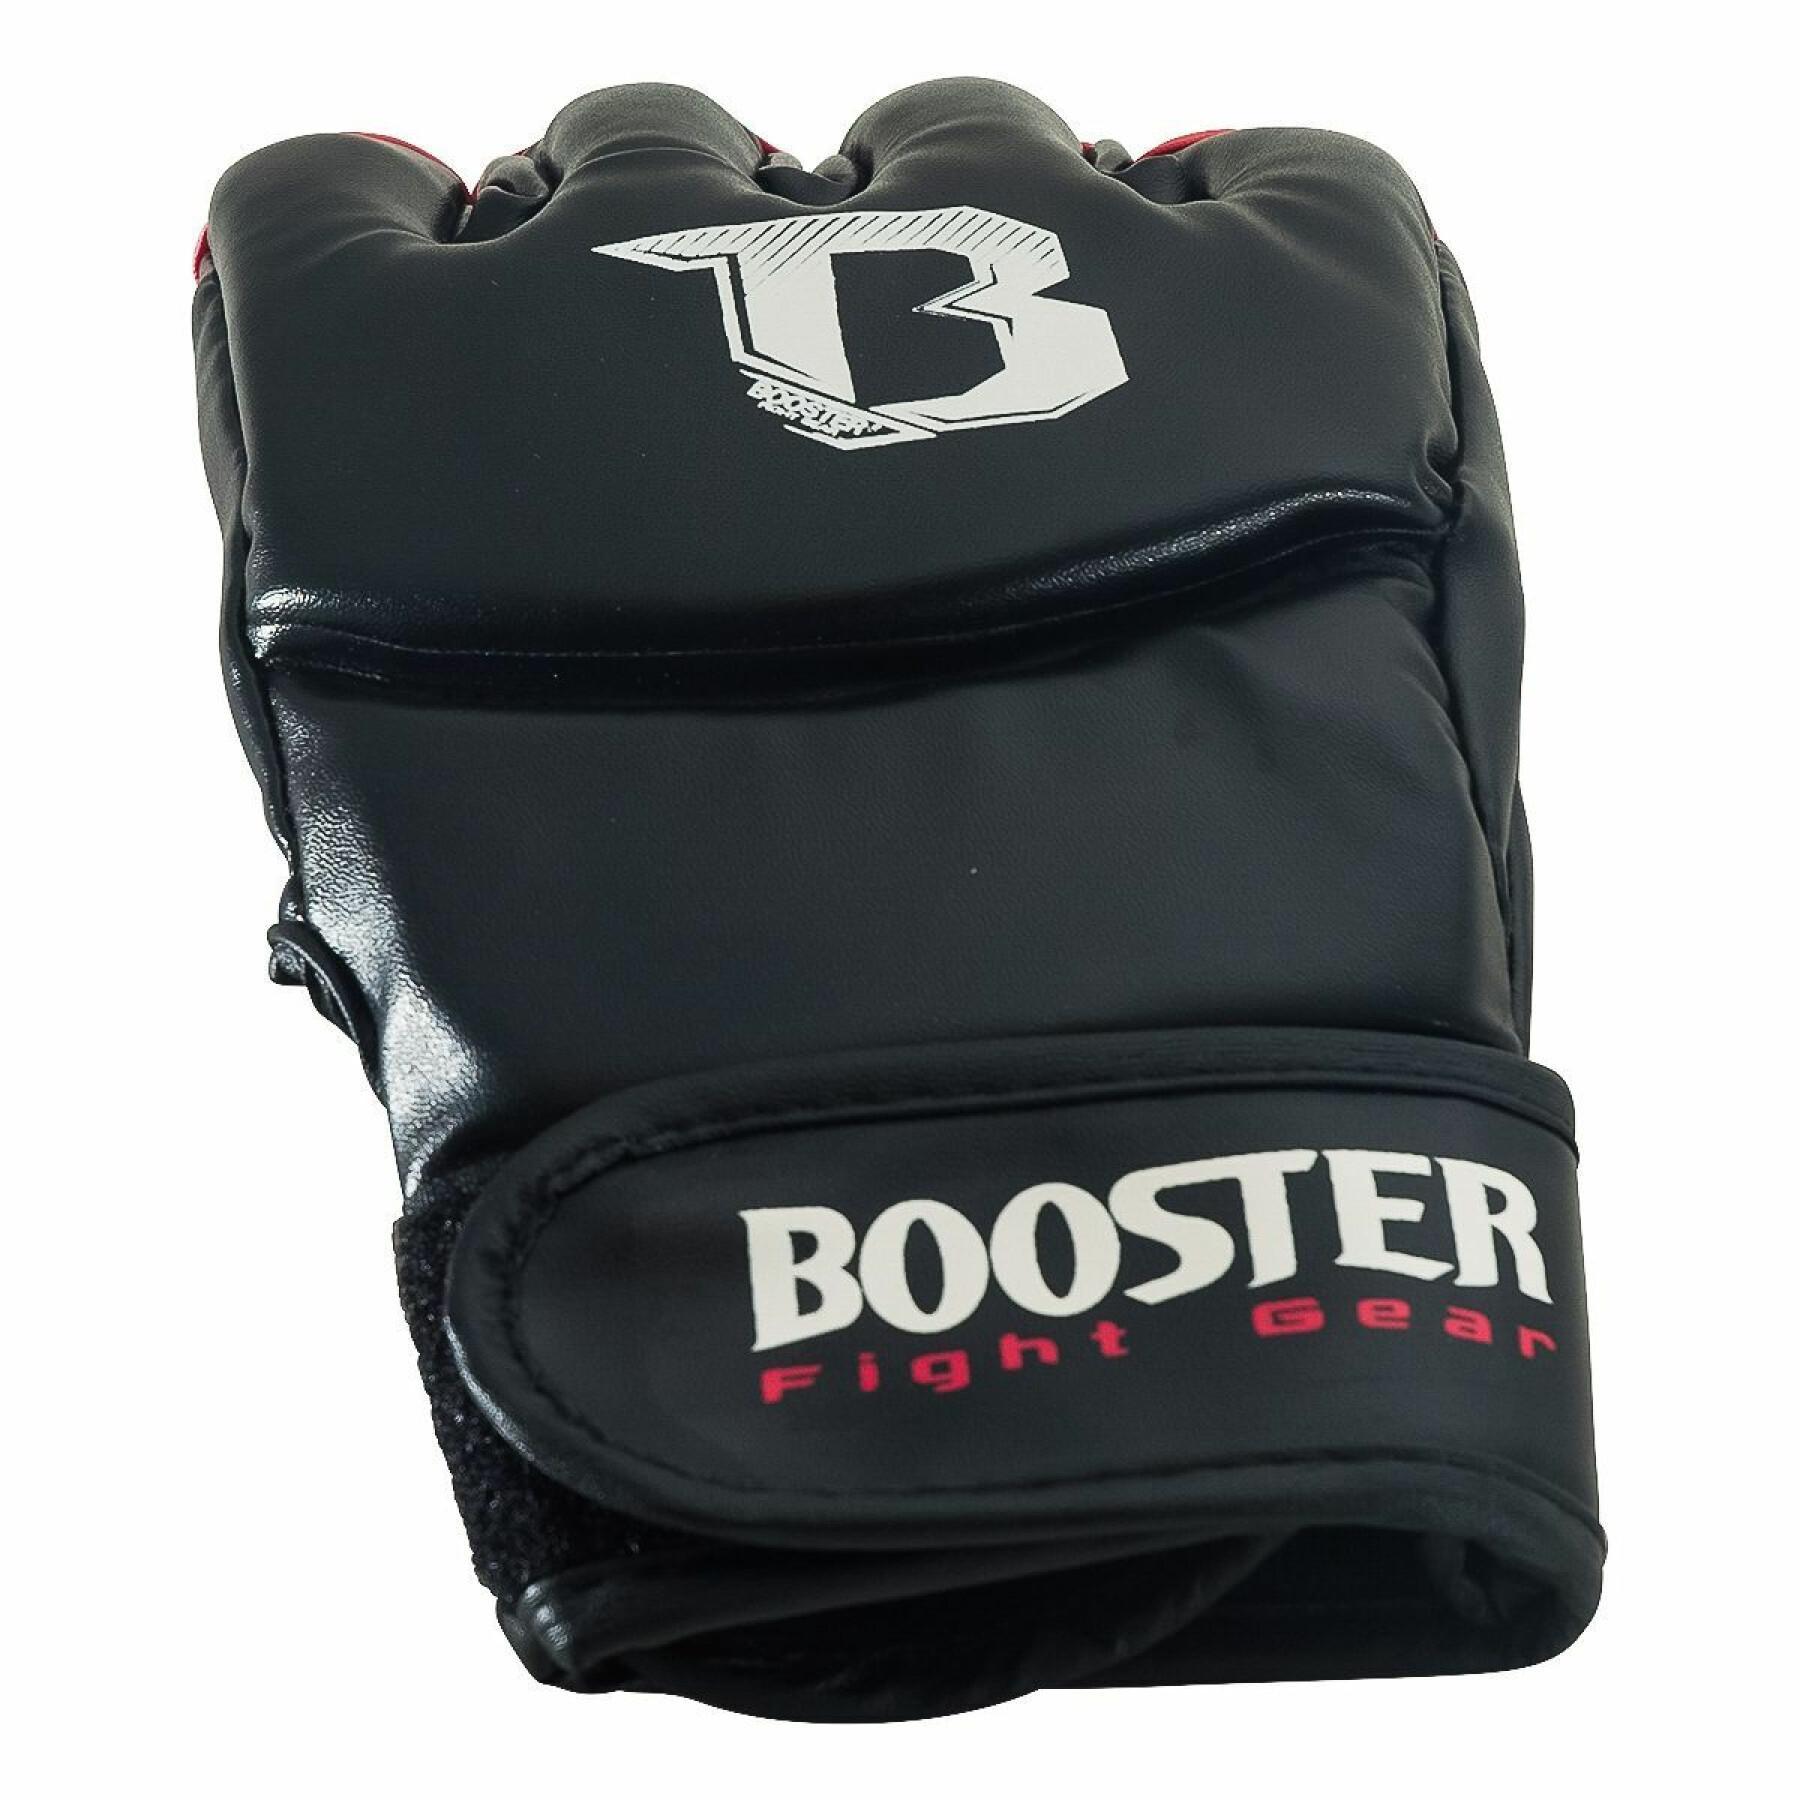 MMA-handskar Booster Fight Gear Bff 9